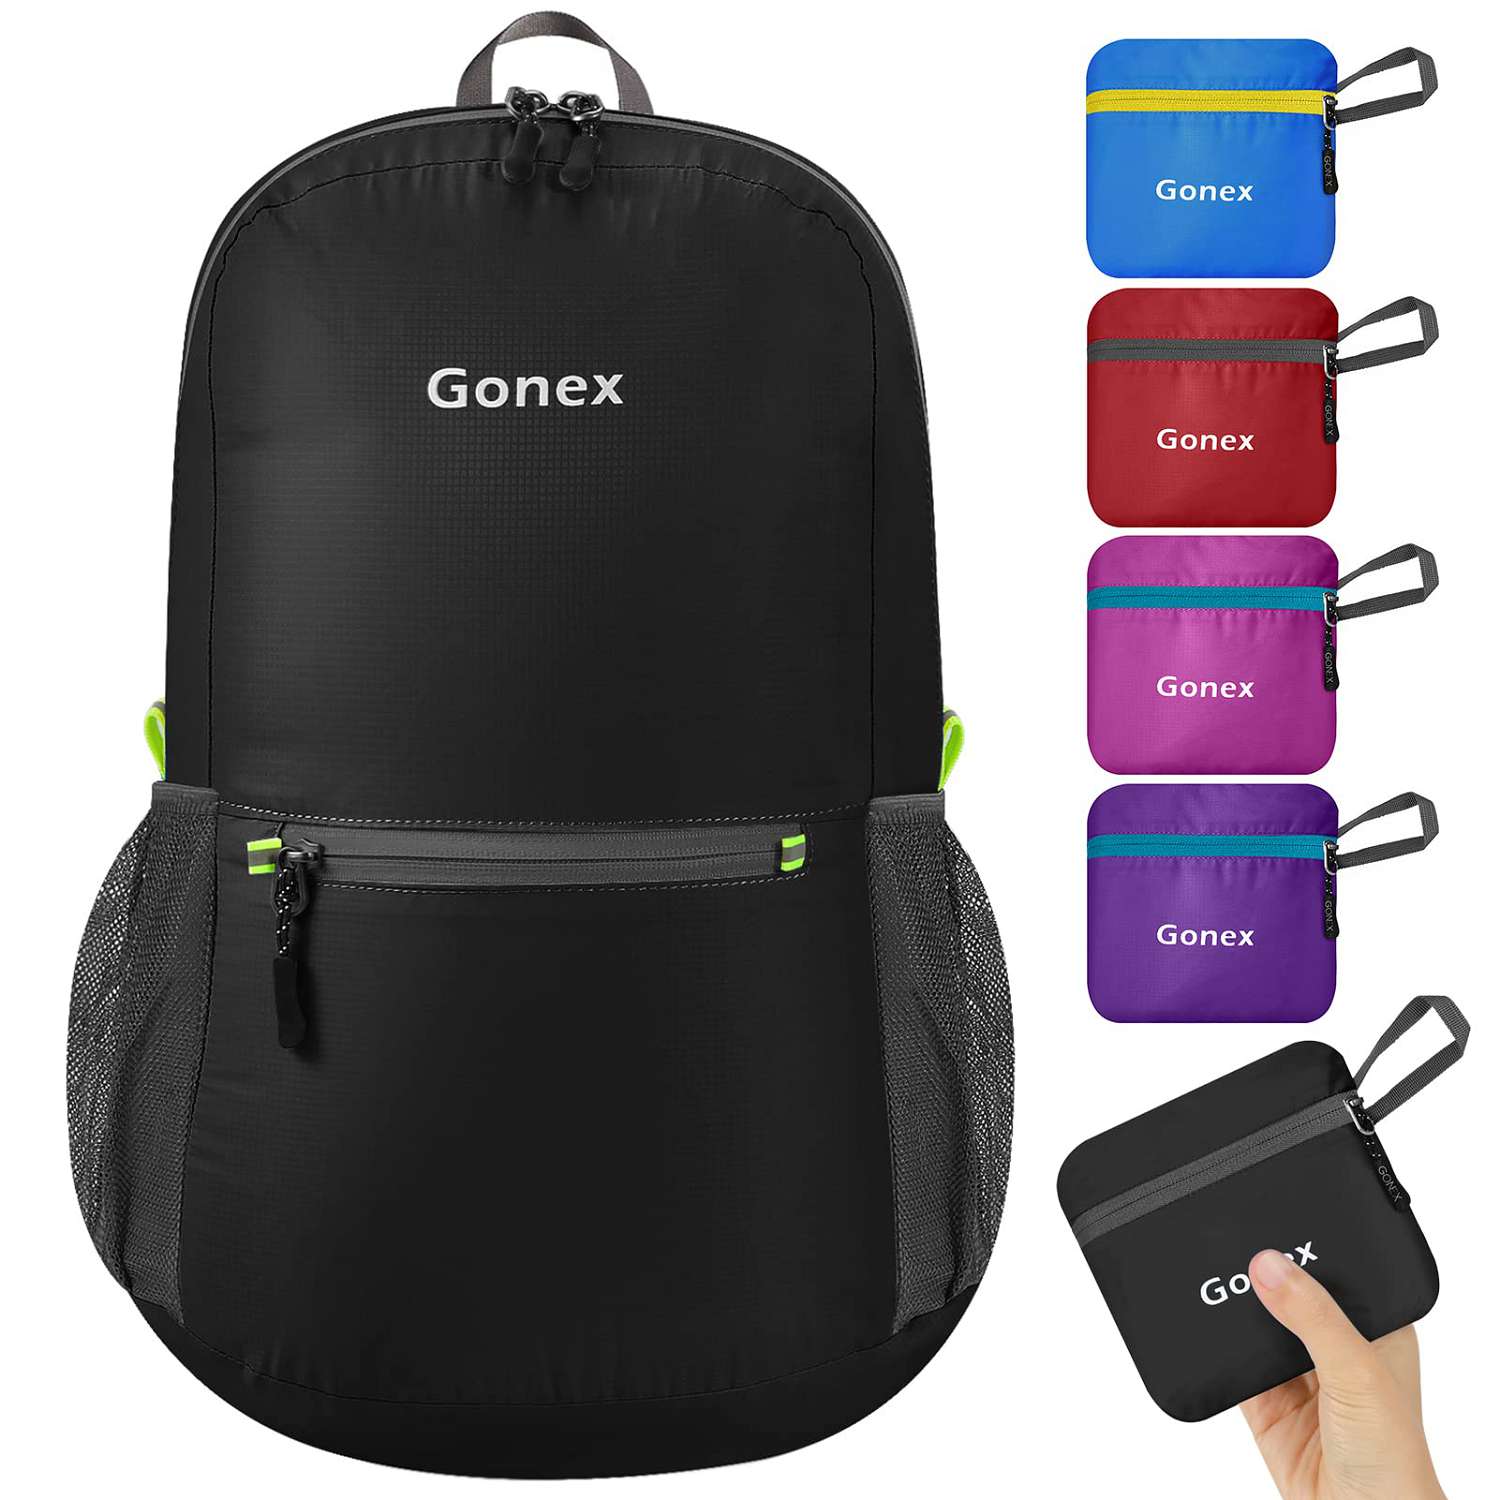 Gonex 20L packable backpack